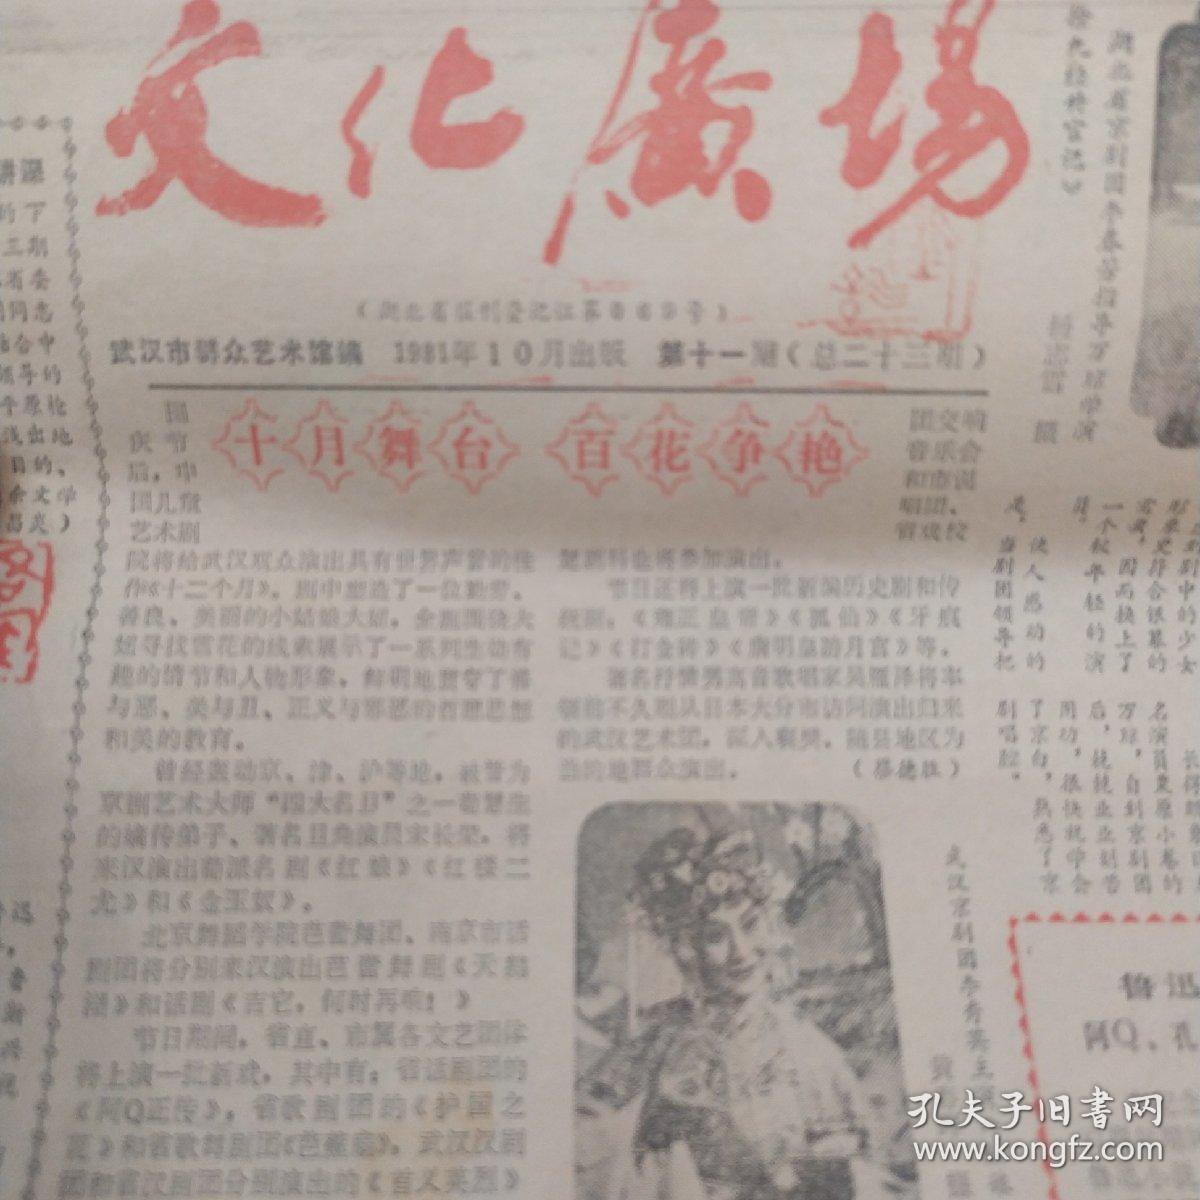 《文化广场》1981年10月 万琼初上银幕 鲁迅作品在汉展览  在谋杀案的背后   电影皇后胡蝶  月湖女侠  大仲马的父亲是黑人